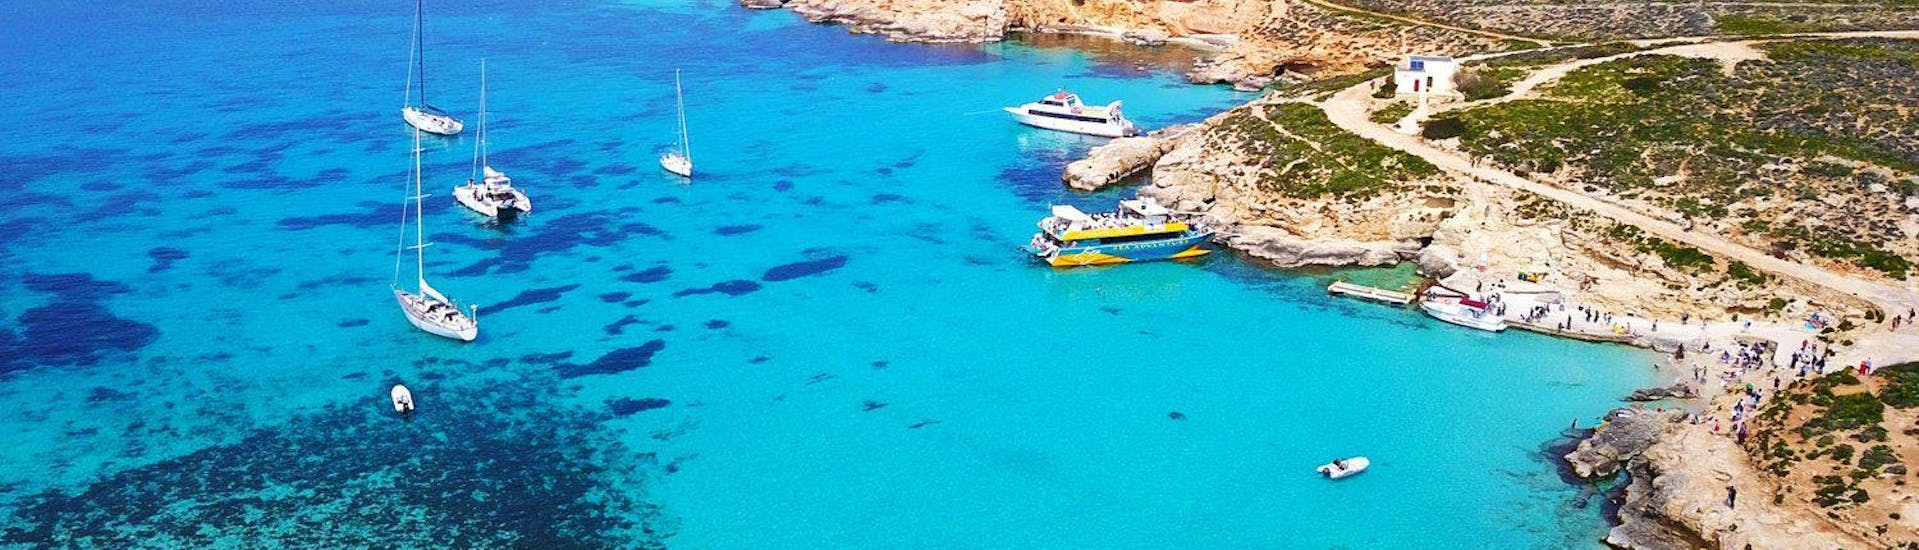 Durante l'escursione catamarano a Escursione in Catamarano a Laguna Blu e Citadella a Gozo di Sea Adventure Excursions dei passeggeri si stanno godendo il paesaggio maltese.